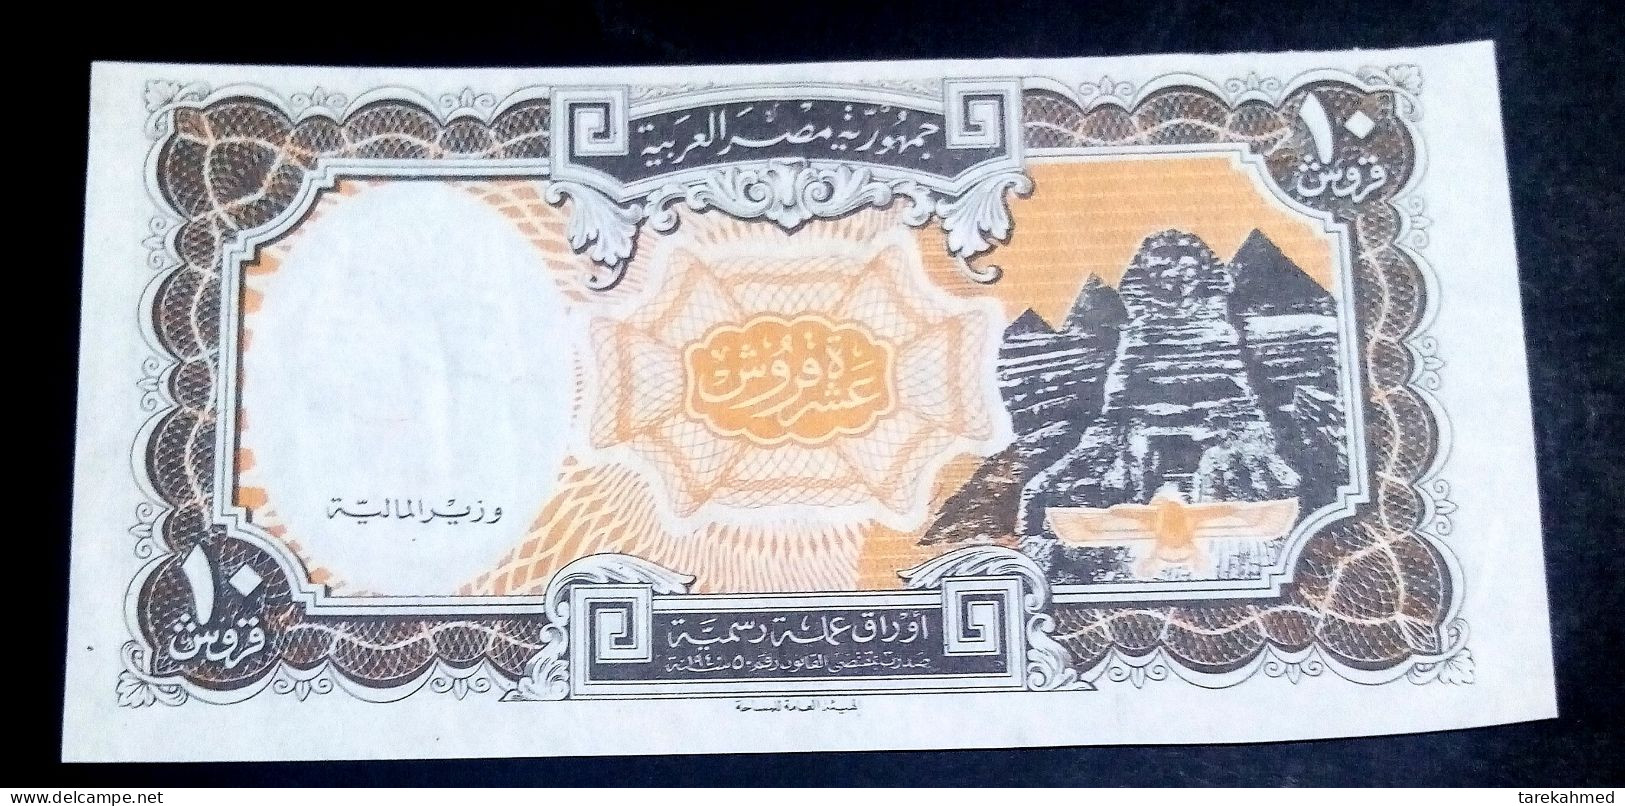 Egypt 1997, Rare Error 10 Piastres - No Arabic Signature No Serial Number  - UNC - Egypte